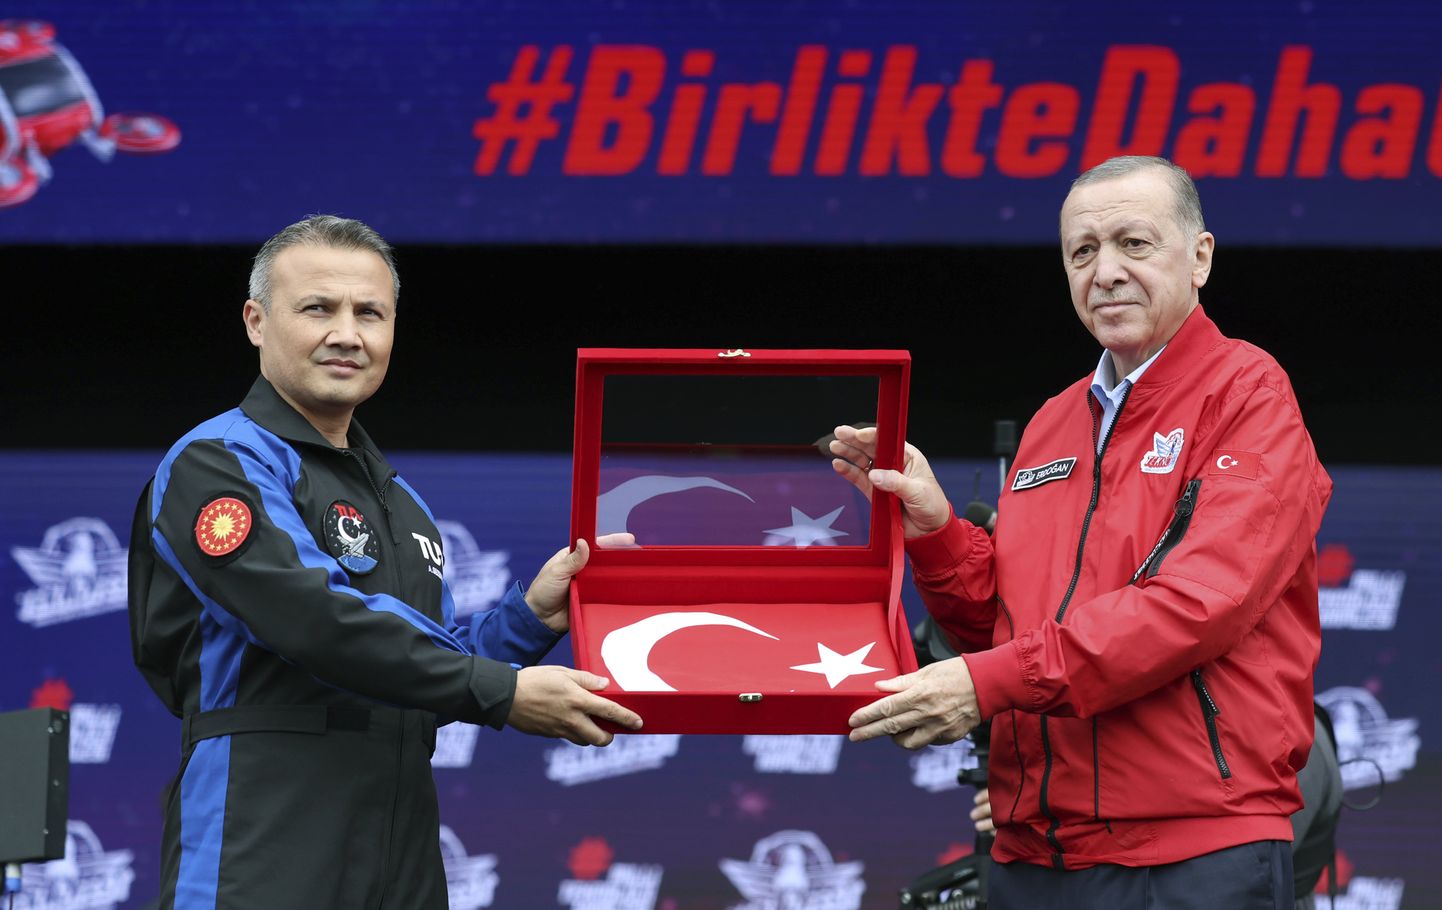 Президент Турции Реджеп Тайип Эрдоган (справа) и пилот ВВС Альпер Гезеравчи, выбранный первым космонавтом Турции.